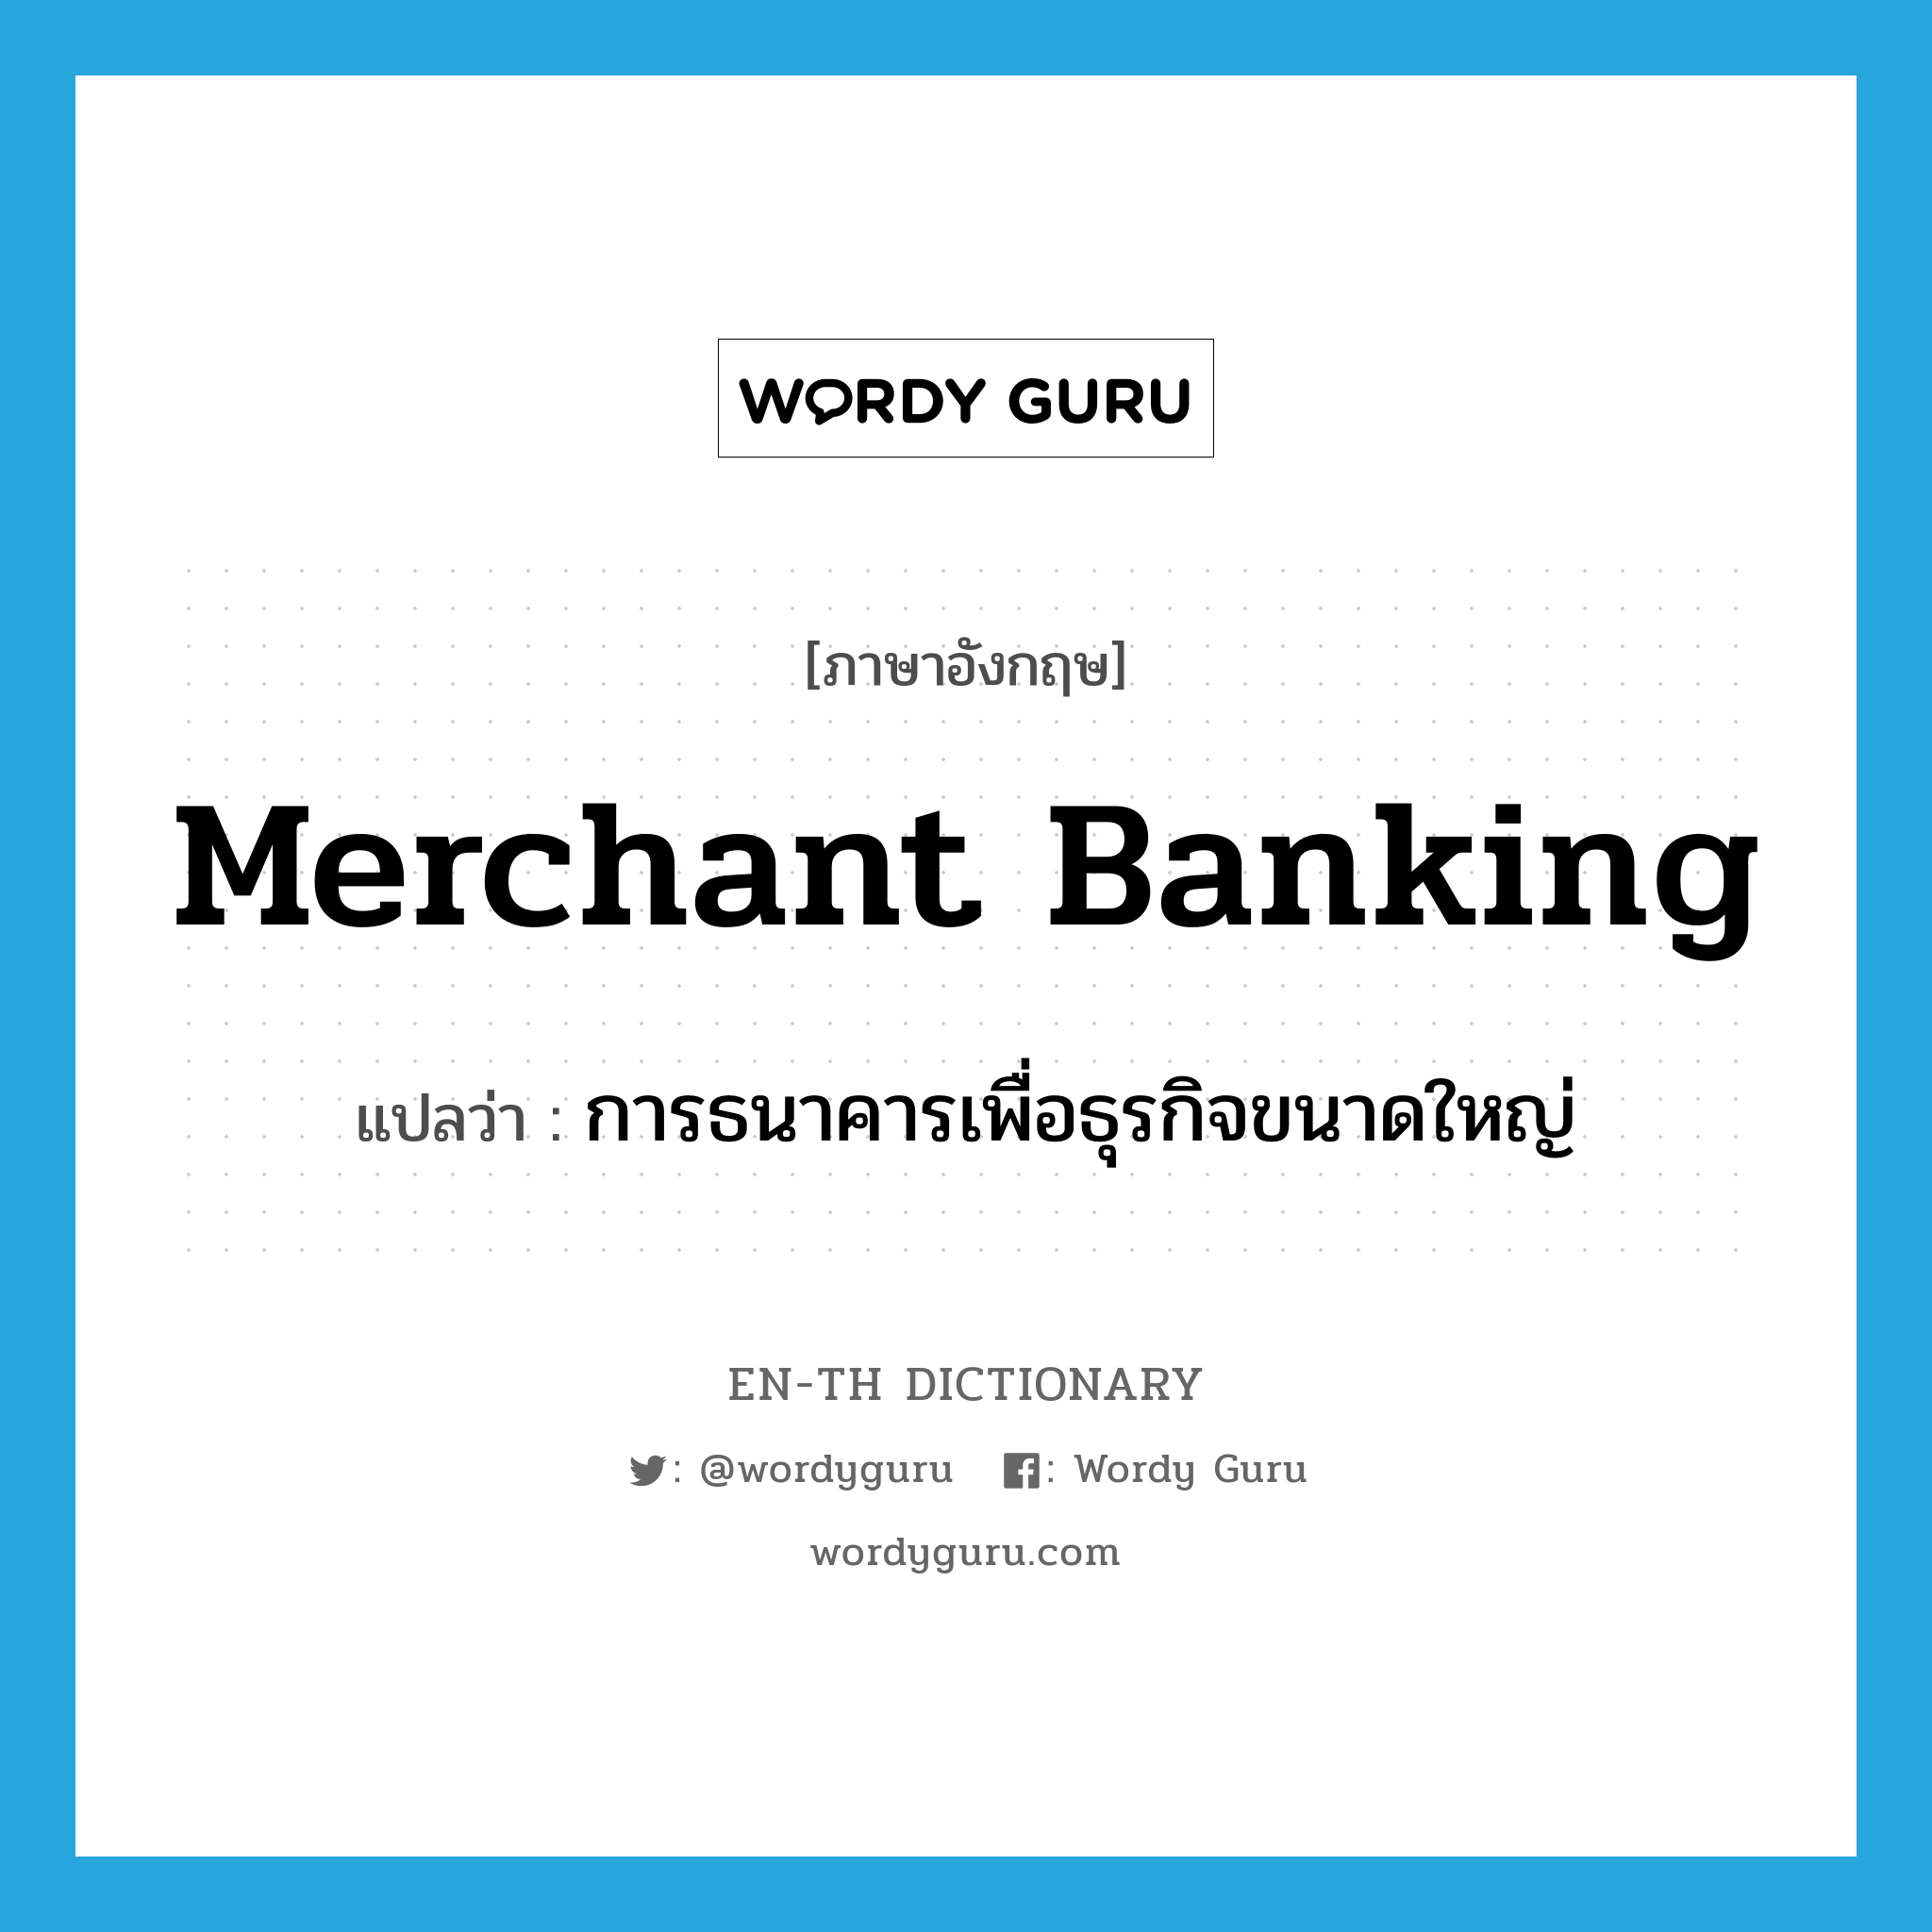 การธนาคารเพื่อธุรกิจขนาดใหญ่ ภาษาอังกฤษ?, คำศัพท์ภาษาอังกฤษ การธนาคารเพื่อธุรกิจขนาดใหญ่ แปลว่า merchant banking ประเภท N หมวด N